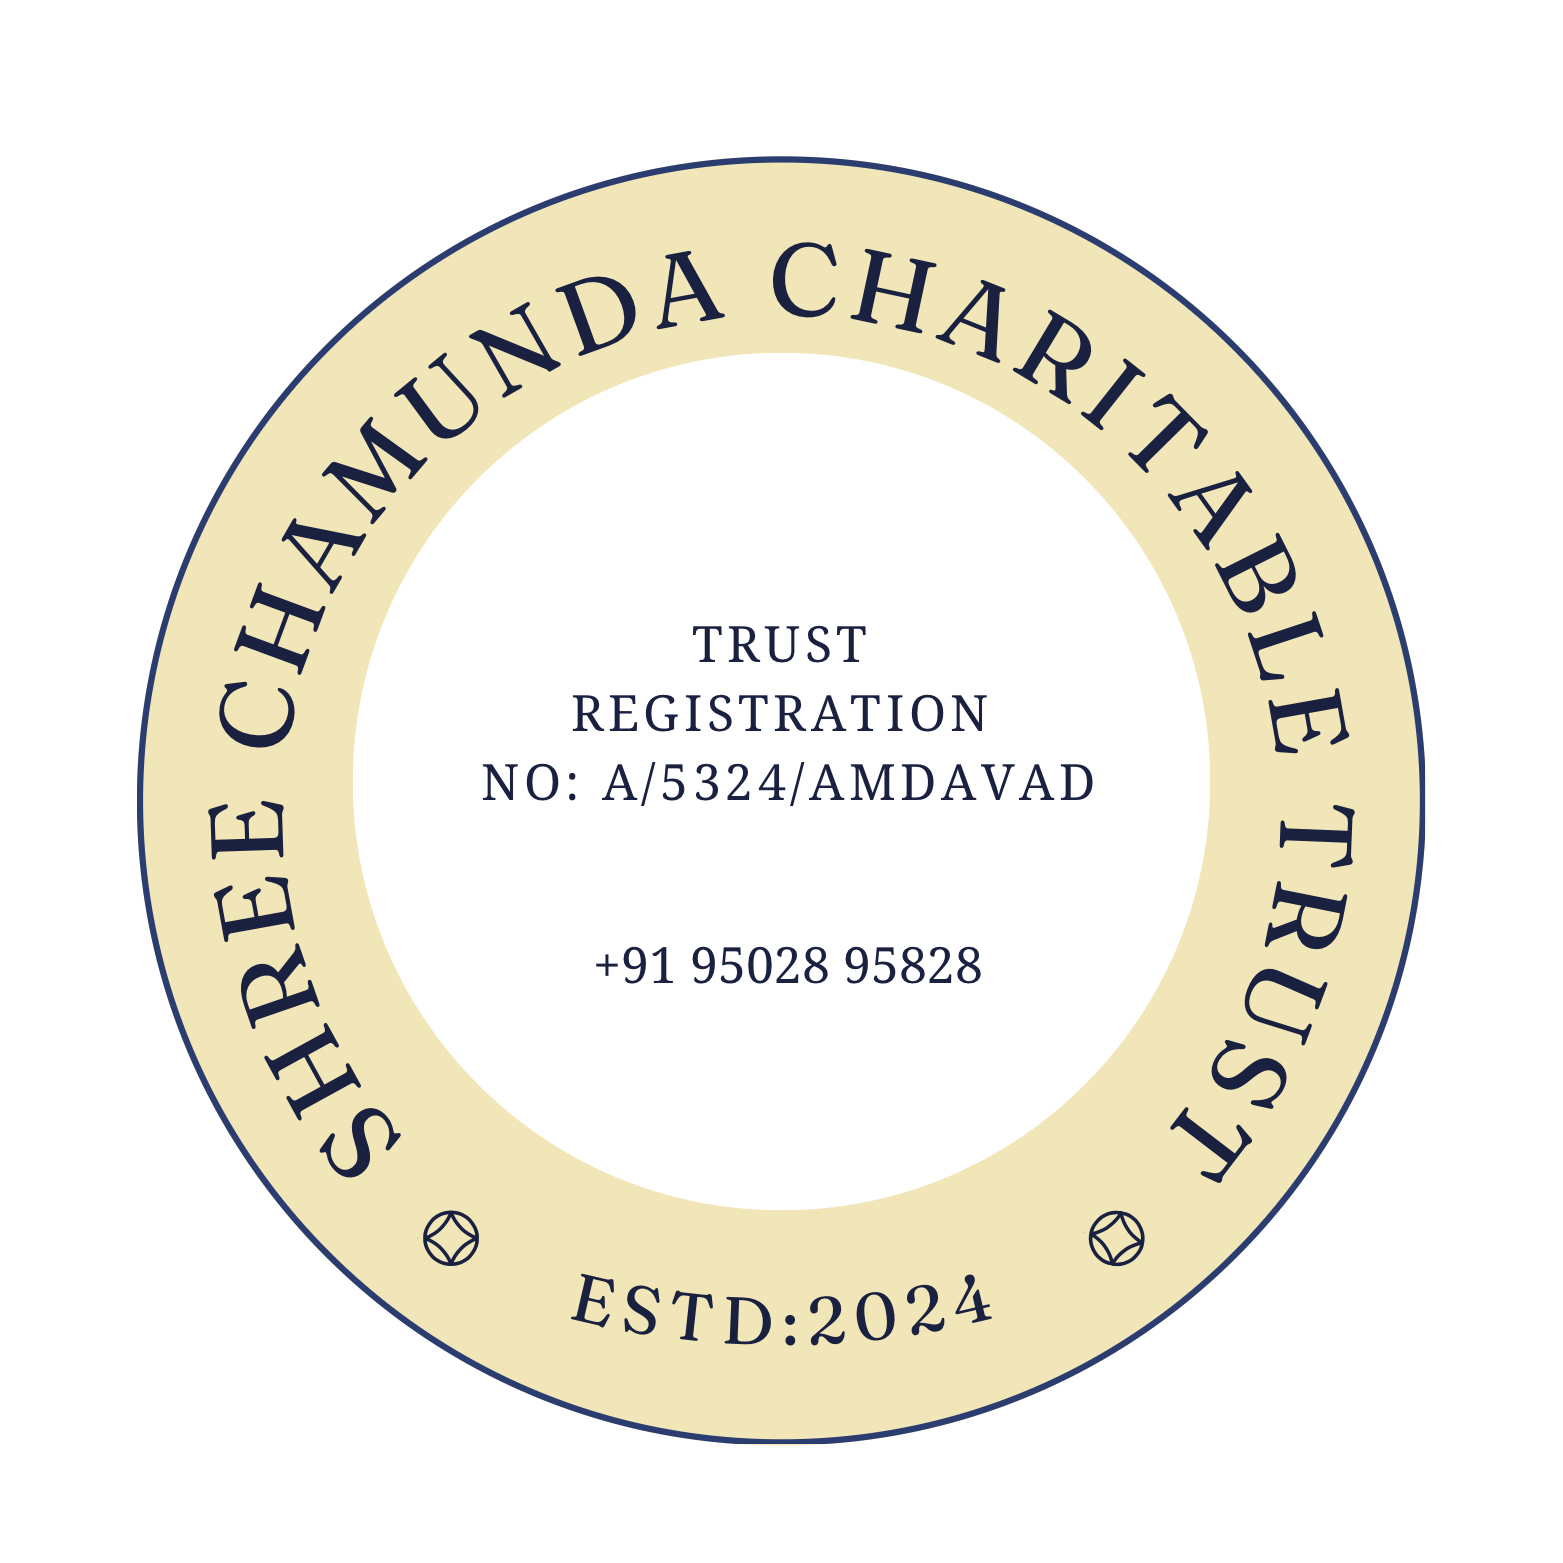 SHREE CHAMUNDA CHARITABLE TRUST